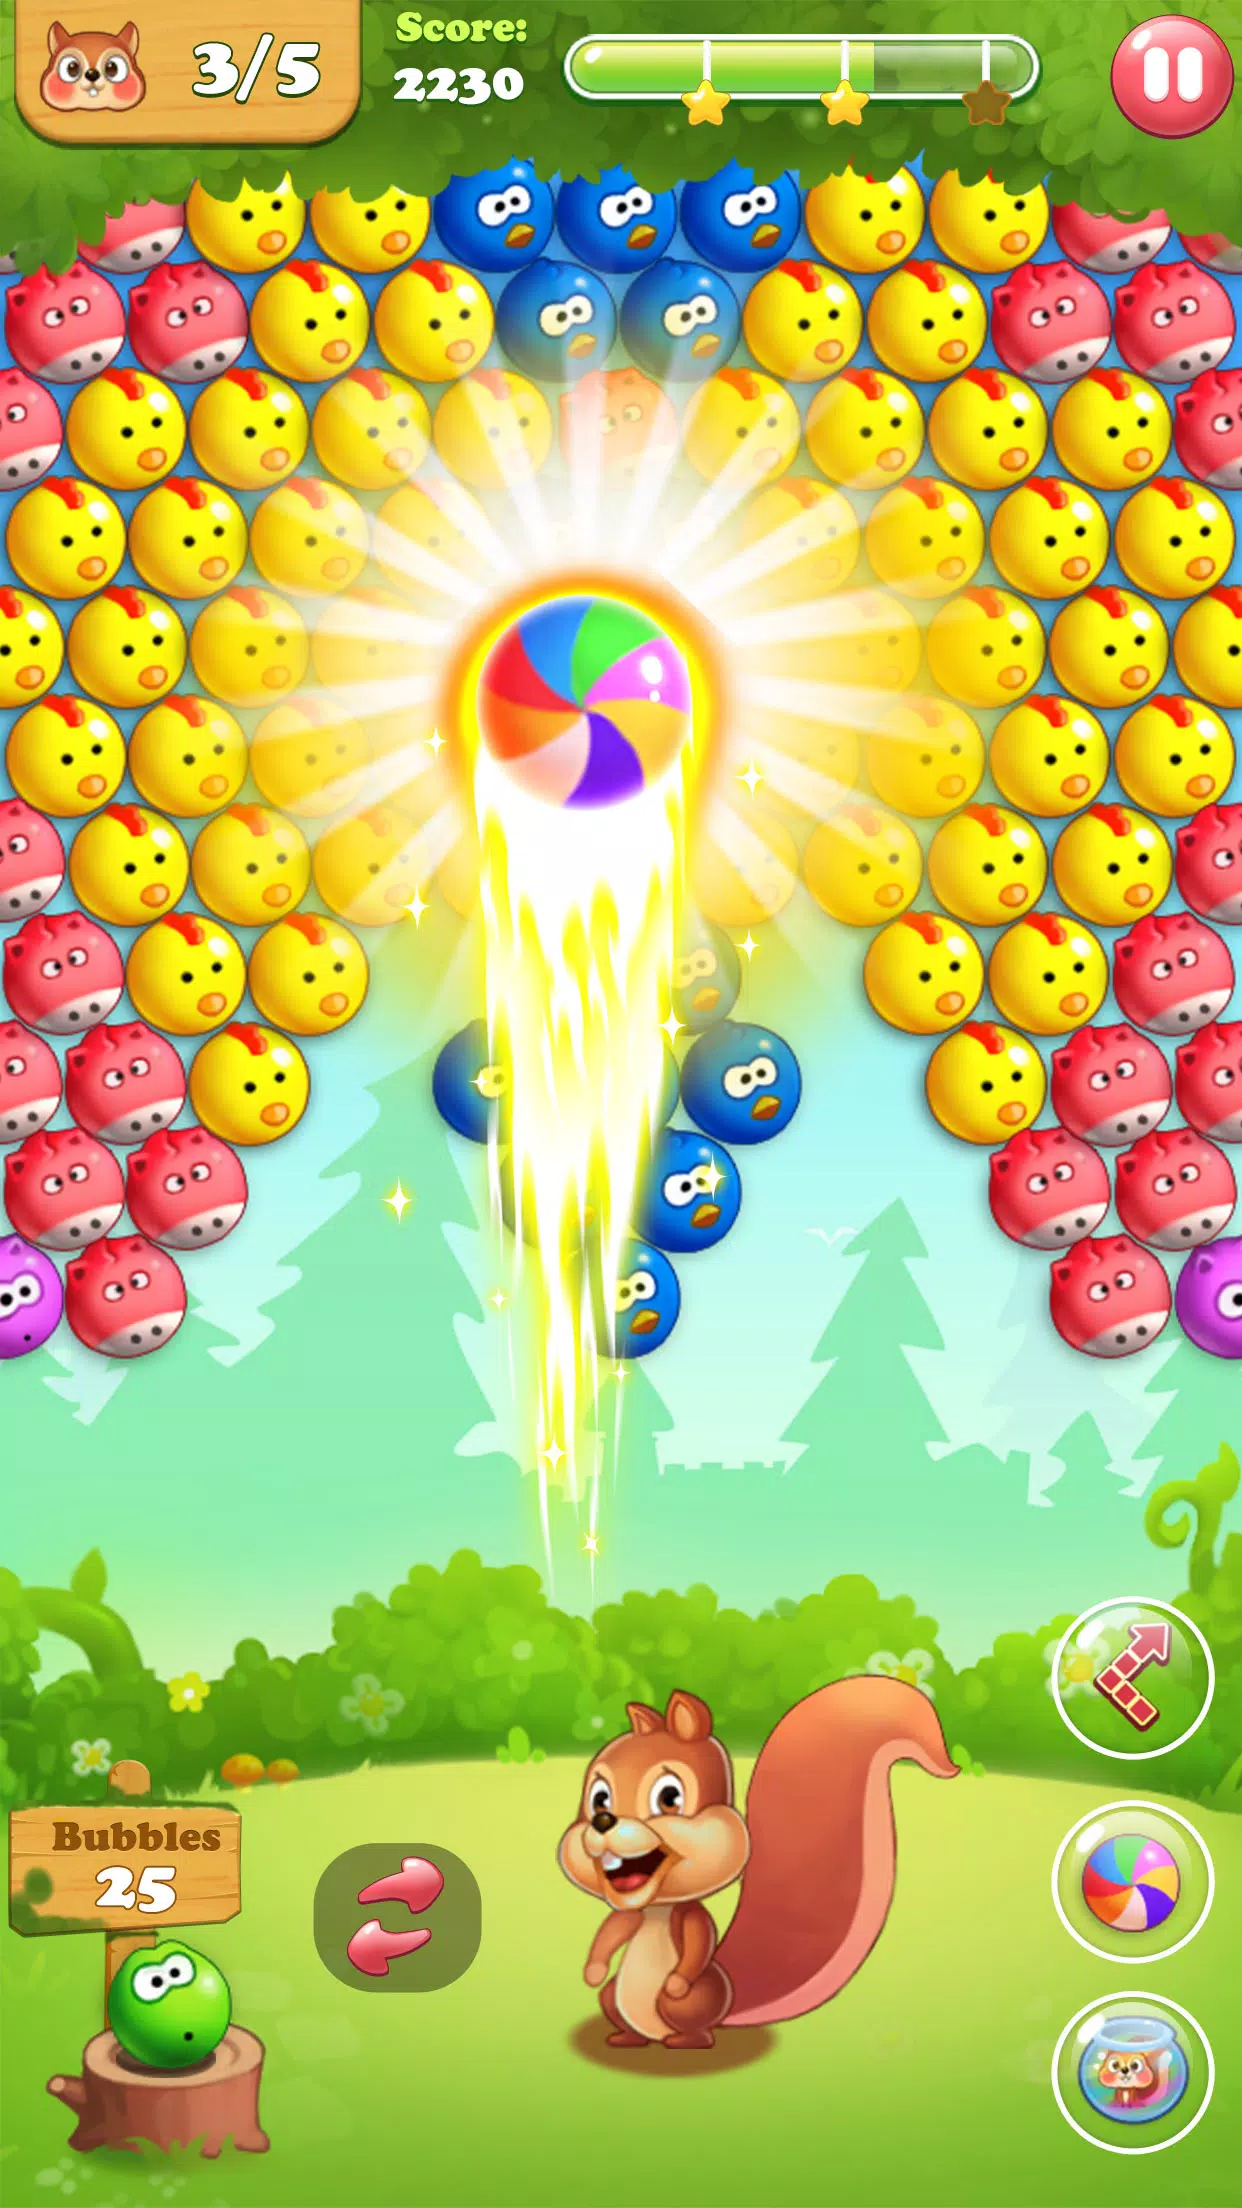 Download do APK de Bubble Shooter 2 para Android